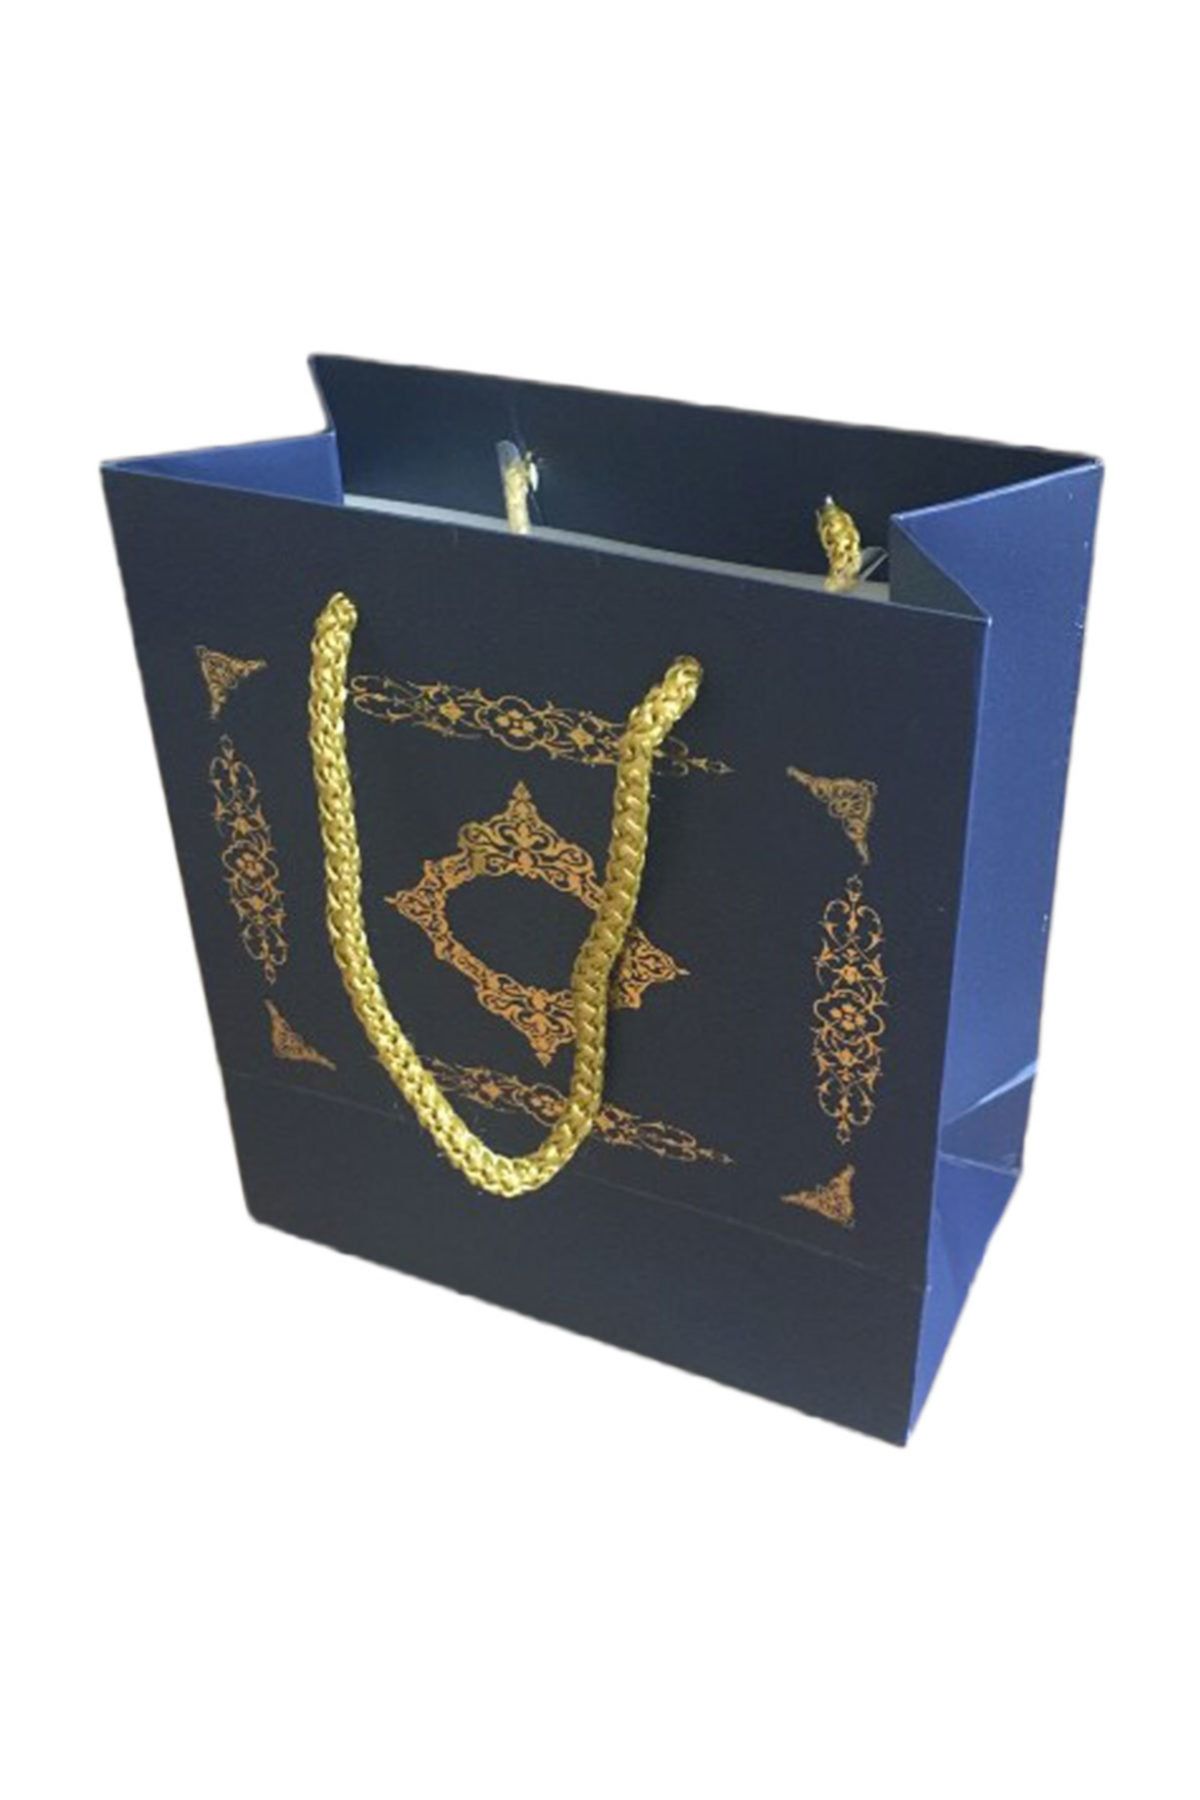 TT Tahtakale Toptancıları Karton Ipsaplı Hediye Çantası Saray Desenli Gold 15x17x8 10 Adet  Lacivert